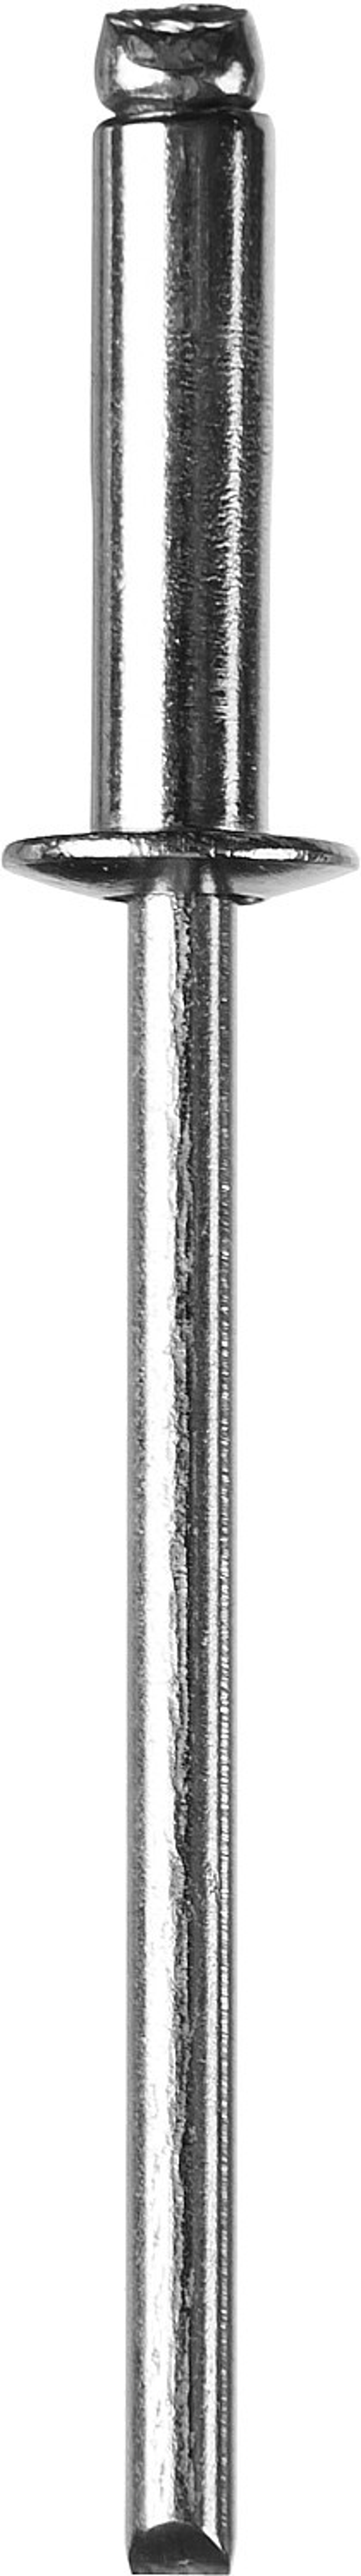 Заклепки из нержавеющей стали, 4,0x14 мм, 500 шт, ЗУБР Профессионал